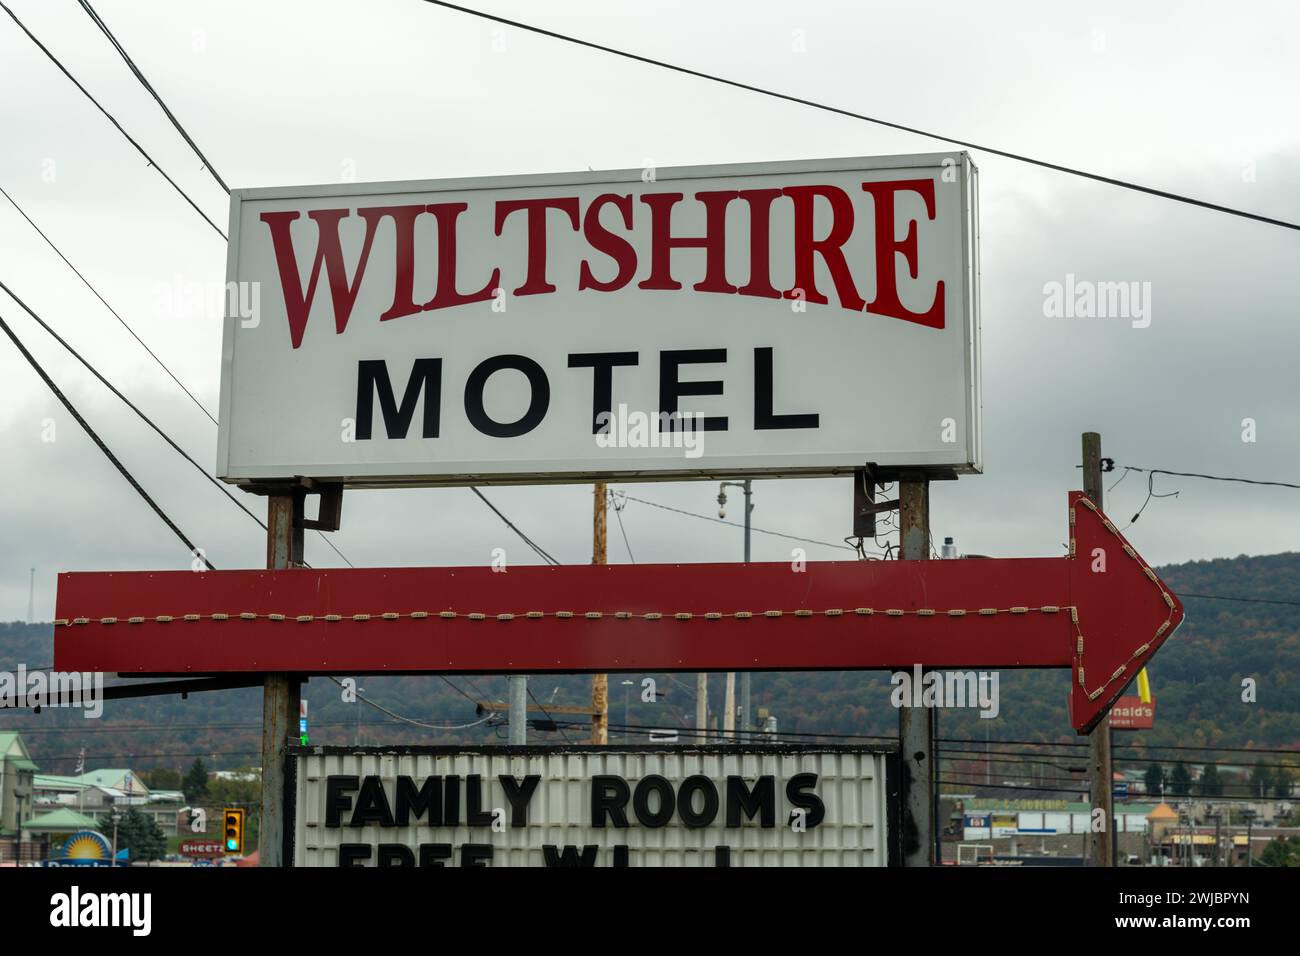 Breezewood, Pennsylvanie - 20 octobre 2023 : le Wiltshire Motel, juste l'un des nombreux motels et hôtels le long de la I-70 Pennsylvania Turnpike i, non usal Banque D'Images